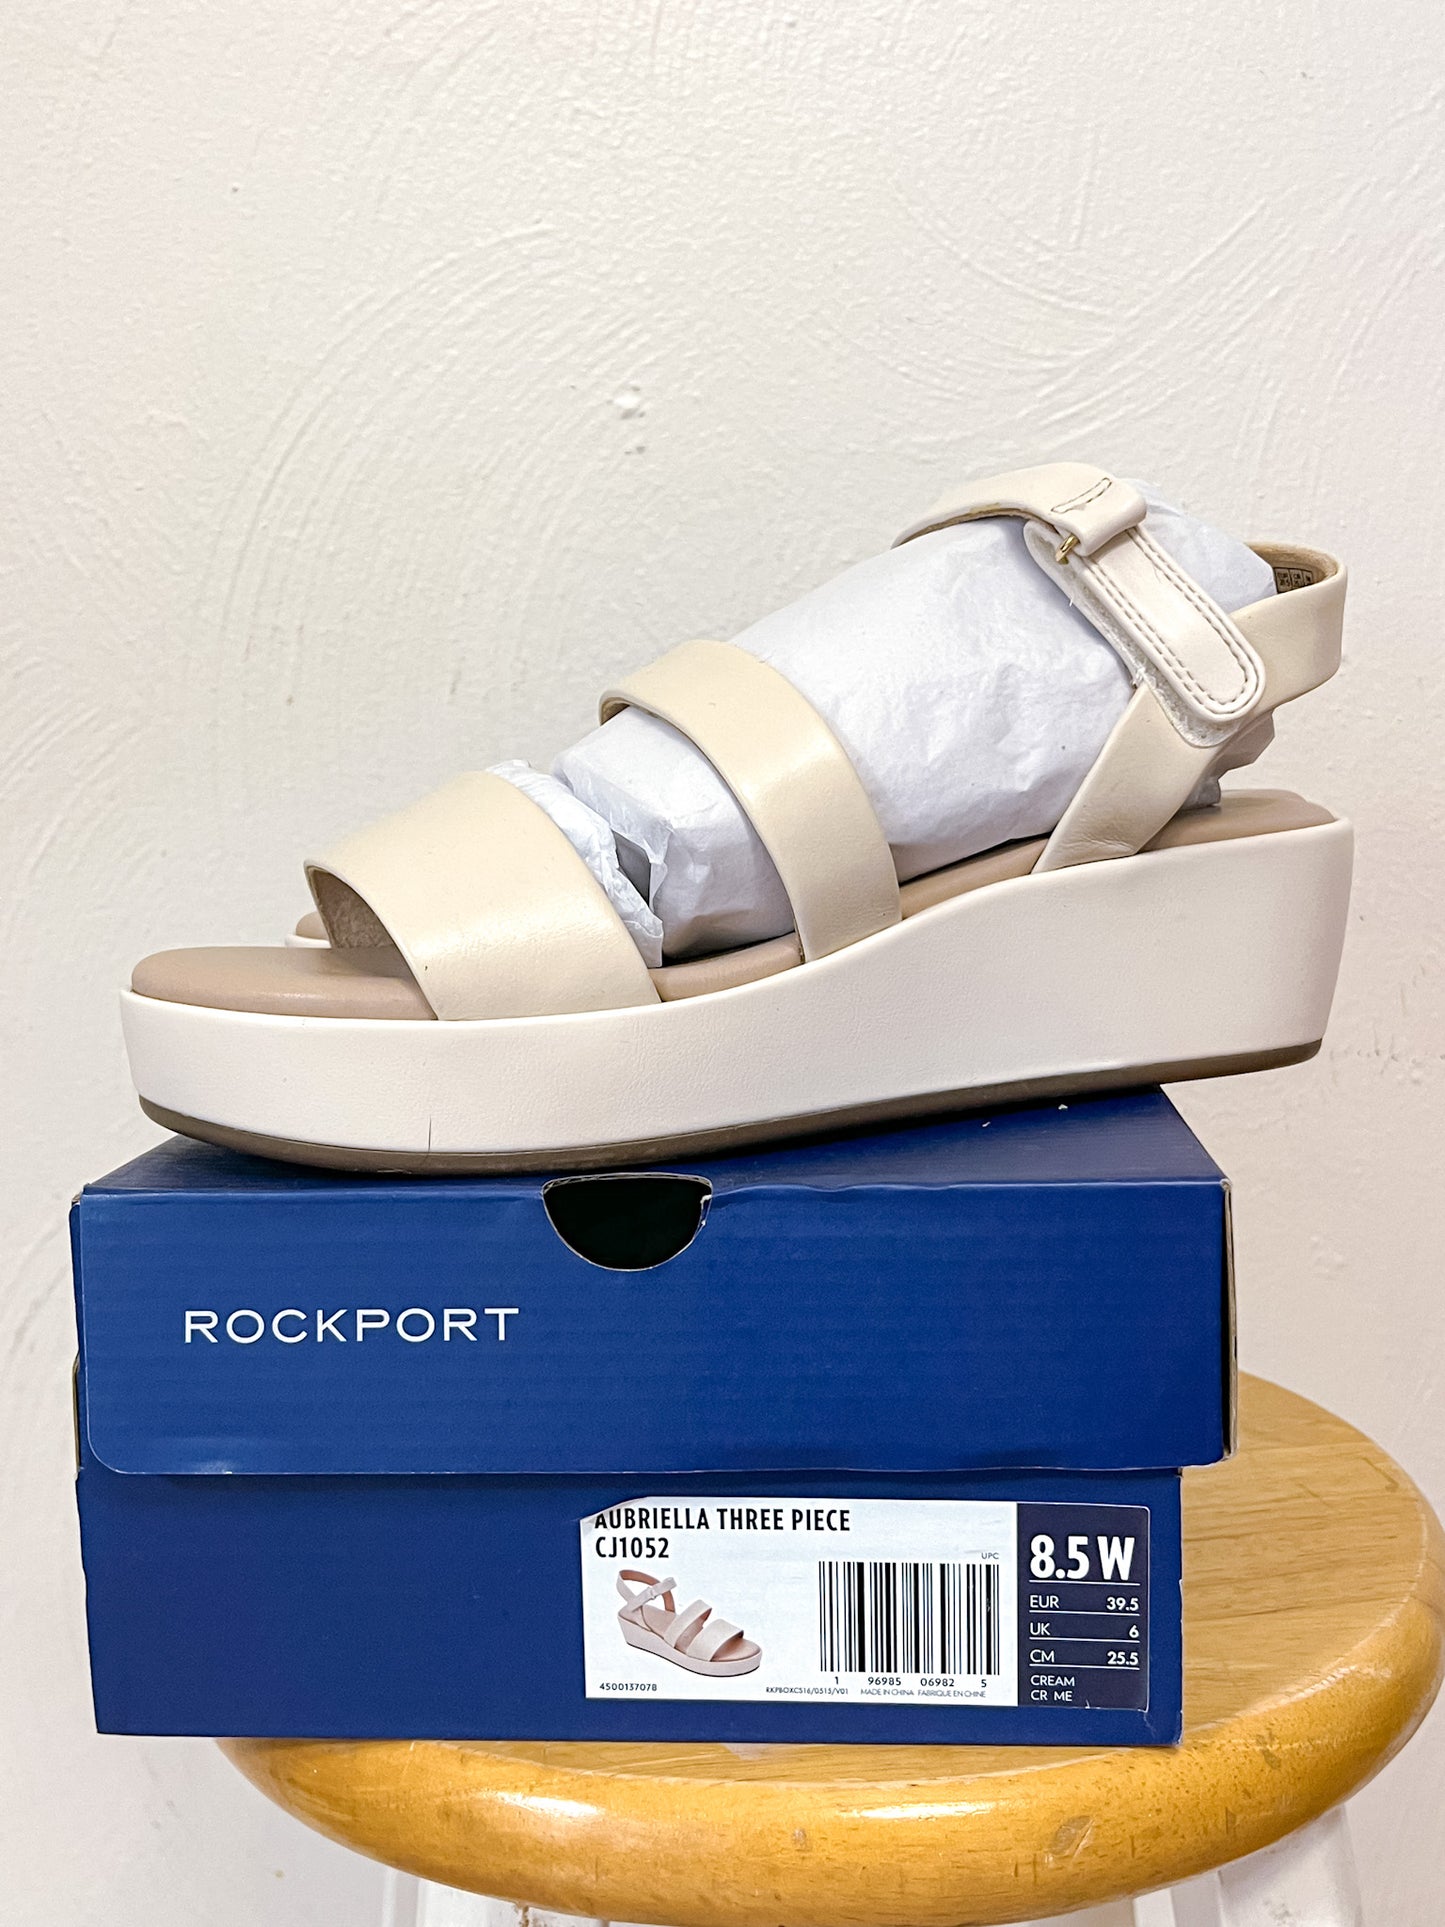 Rockport Sandals (8.5)